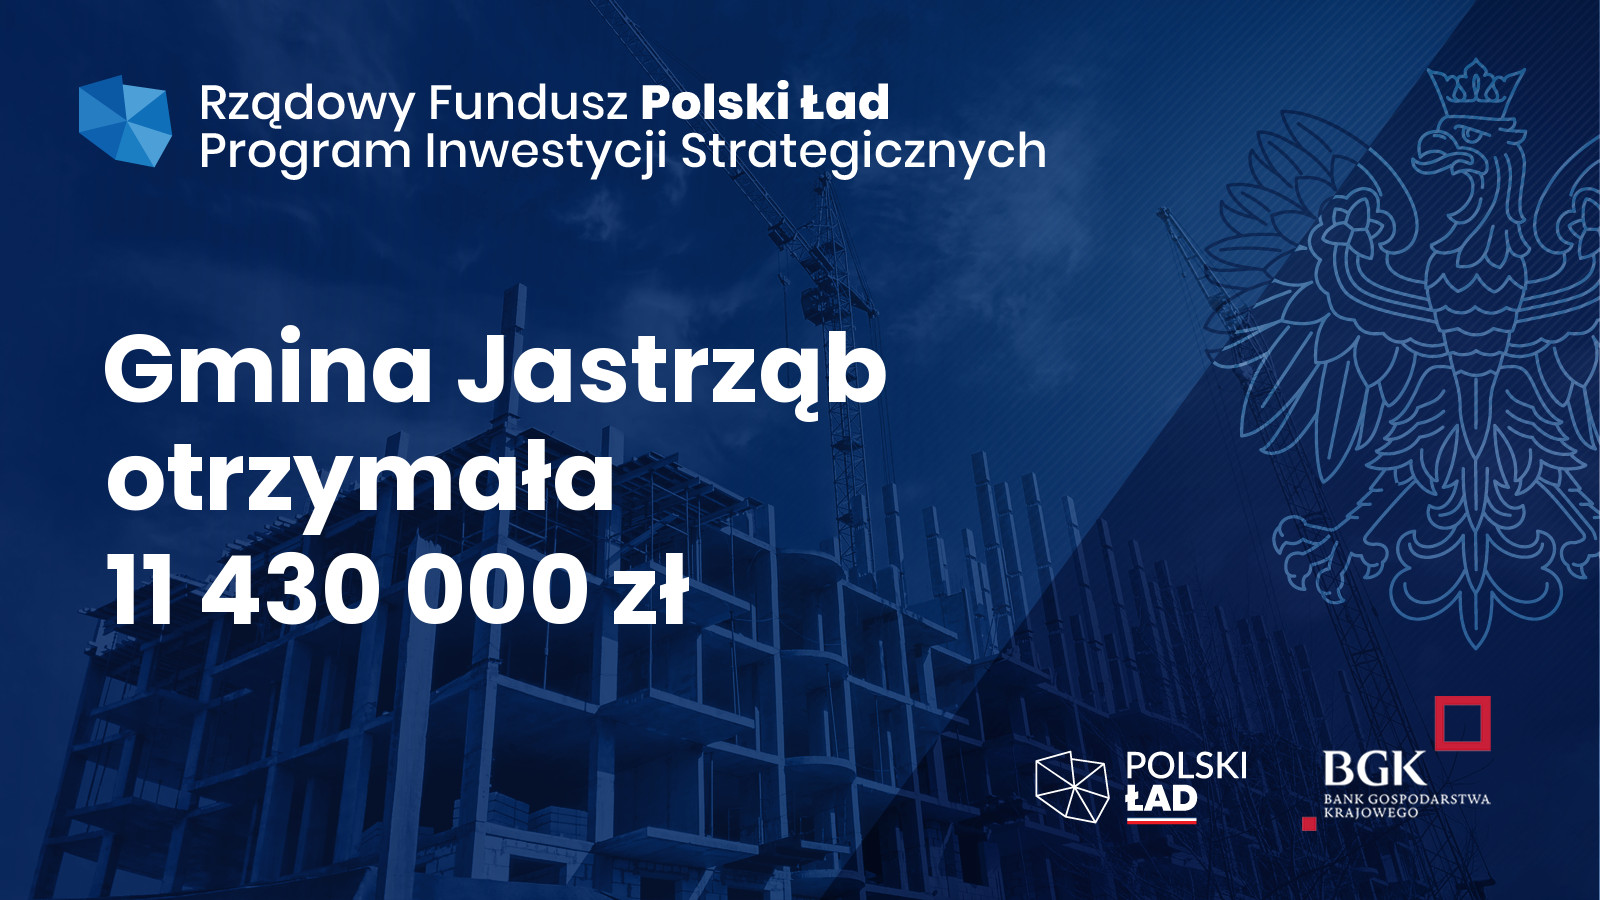 Gmina Jastrząb otrzymała 11 430 000 zł w ramach Rządowego Funduszu Polski Ład - Program inwestycji Strategicznych